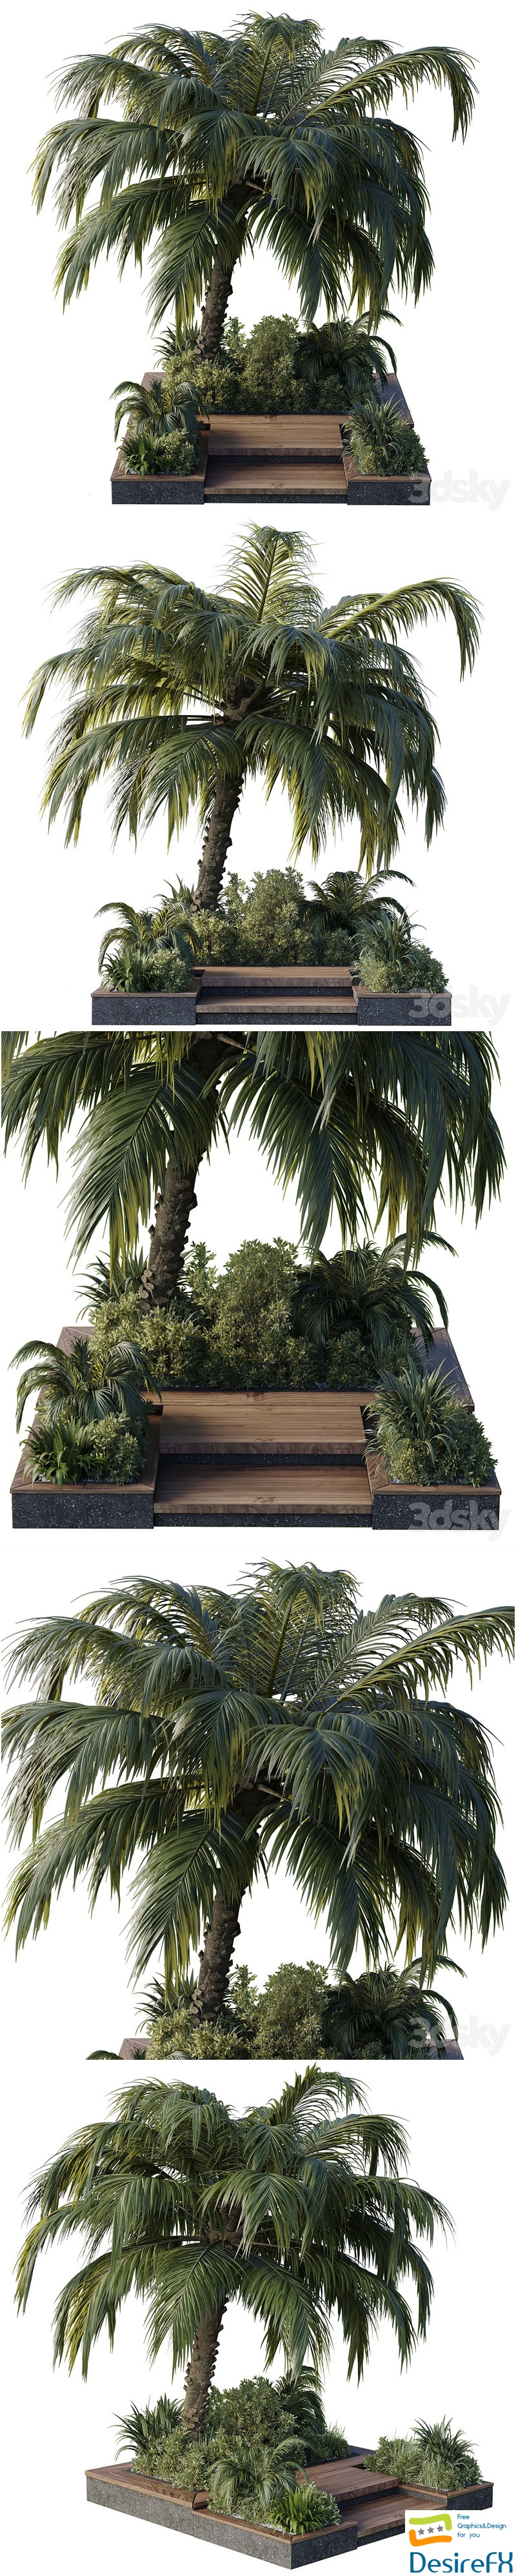 Garden pot tree palm bush fern grass concrete base Collection Outdoor plant 102 3D Model